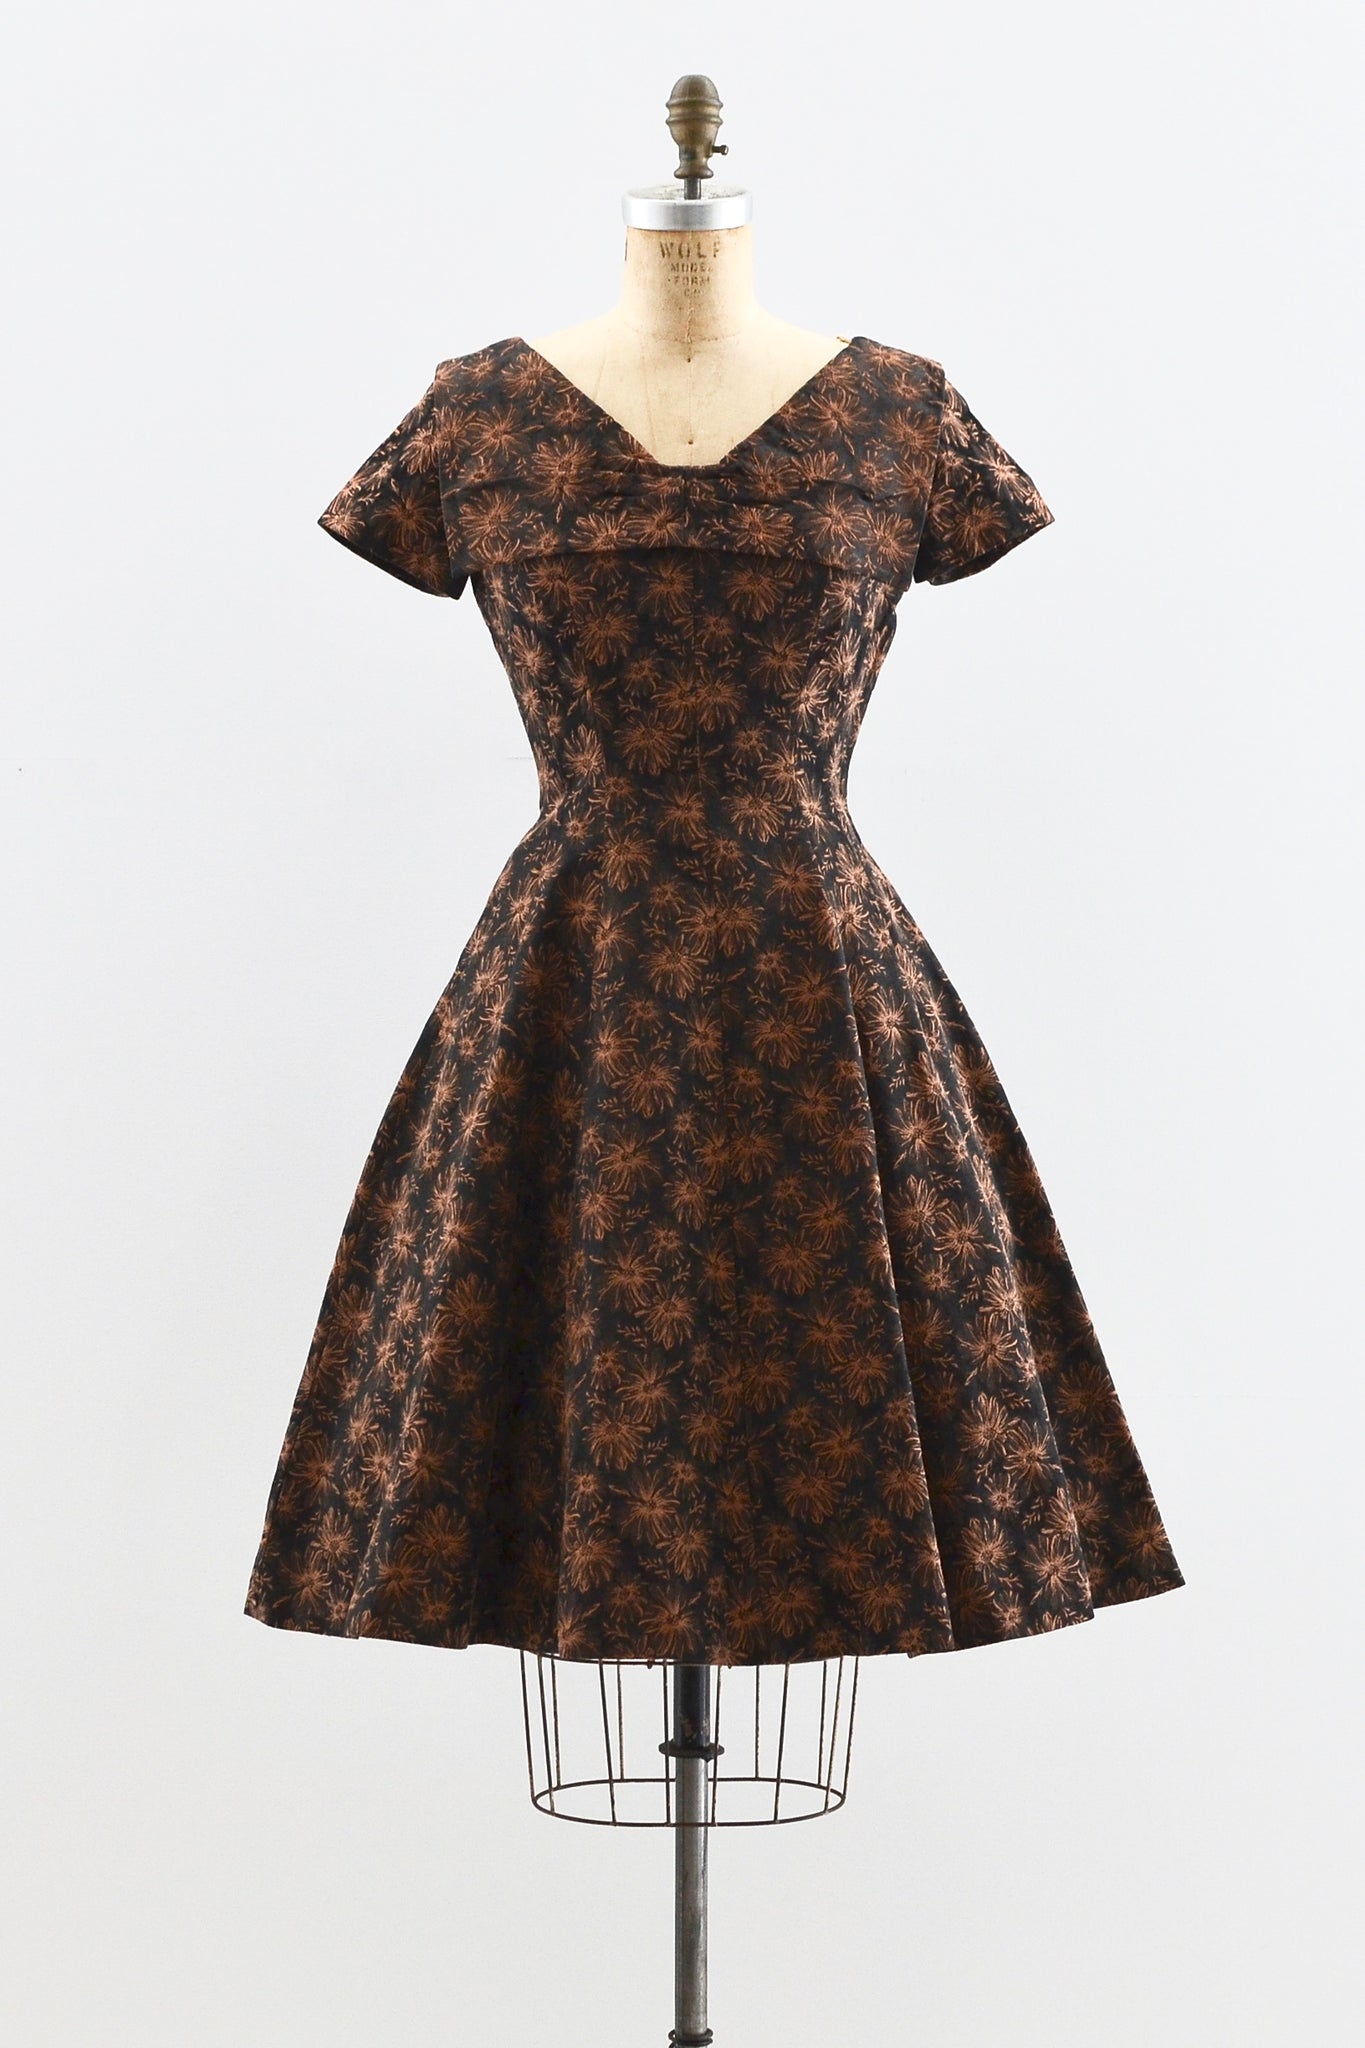 Minx Modes Dress - Pickled Vintage